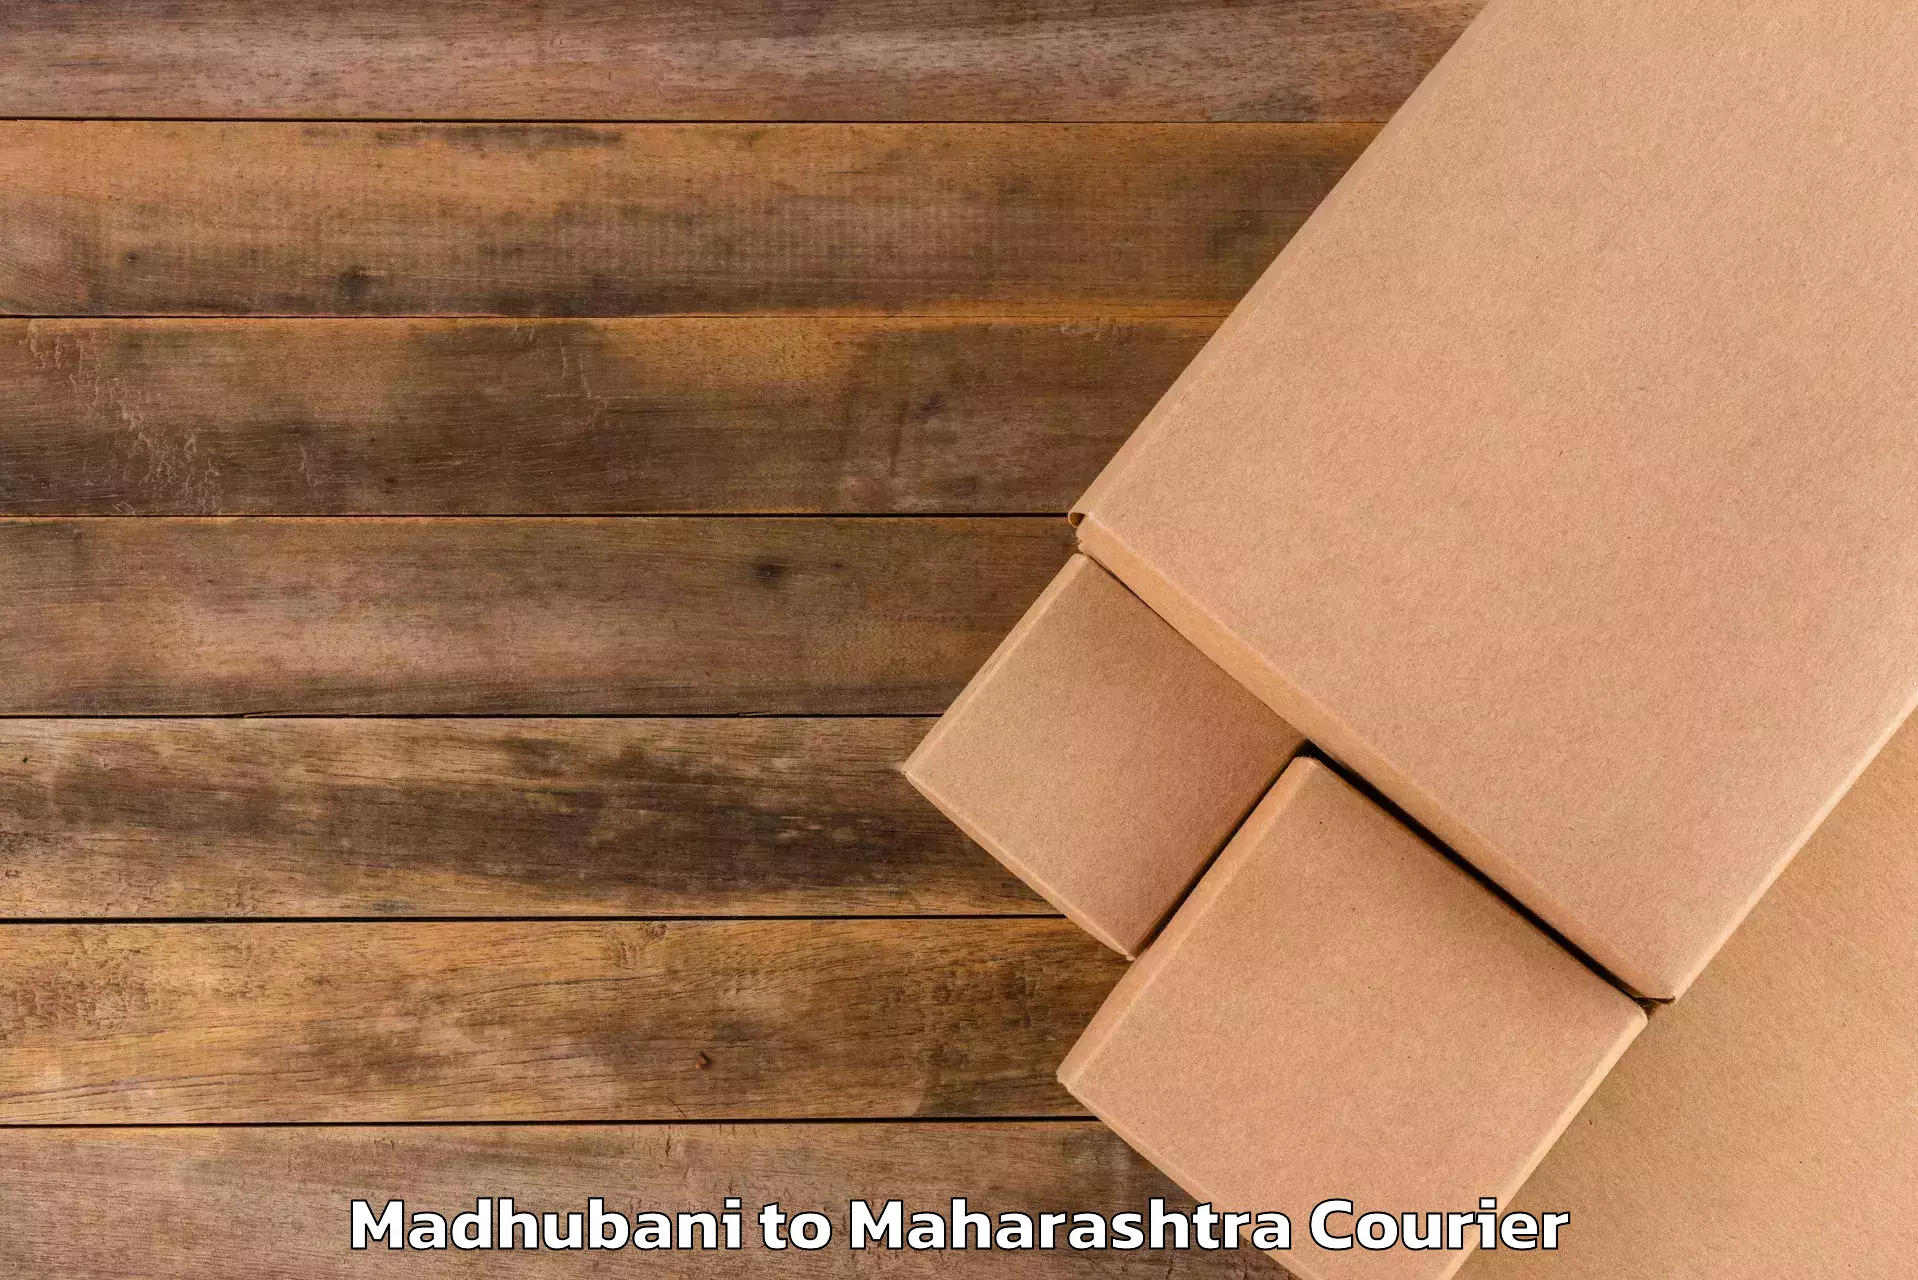 Scheduled baggage courier Madhubani to Jawaharlal Nehru Port Nhava Sheva